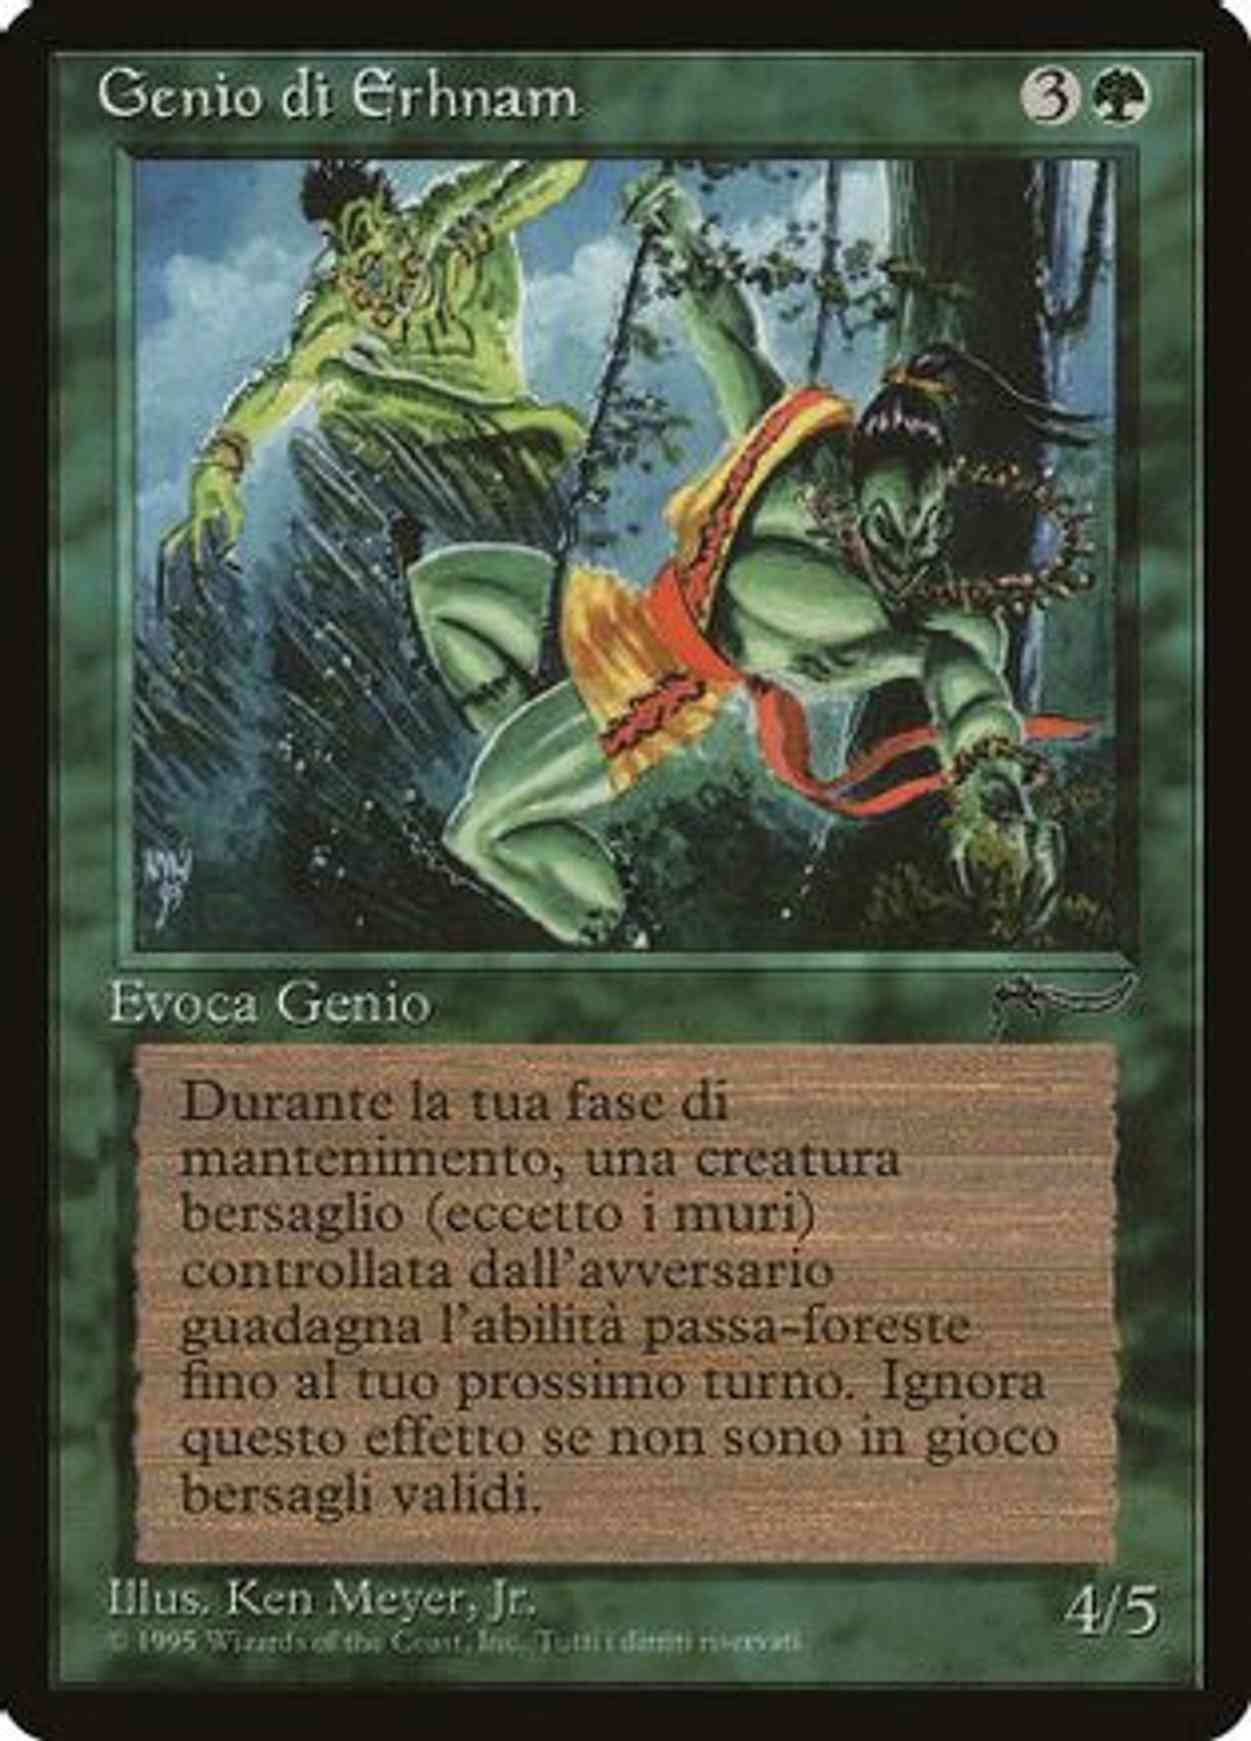 Erhnam Djinn (Italian) - "Genio di Erhnam" magic card front